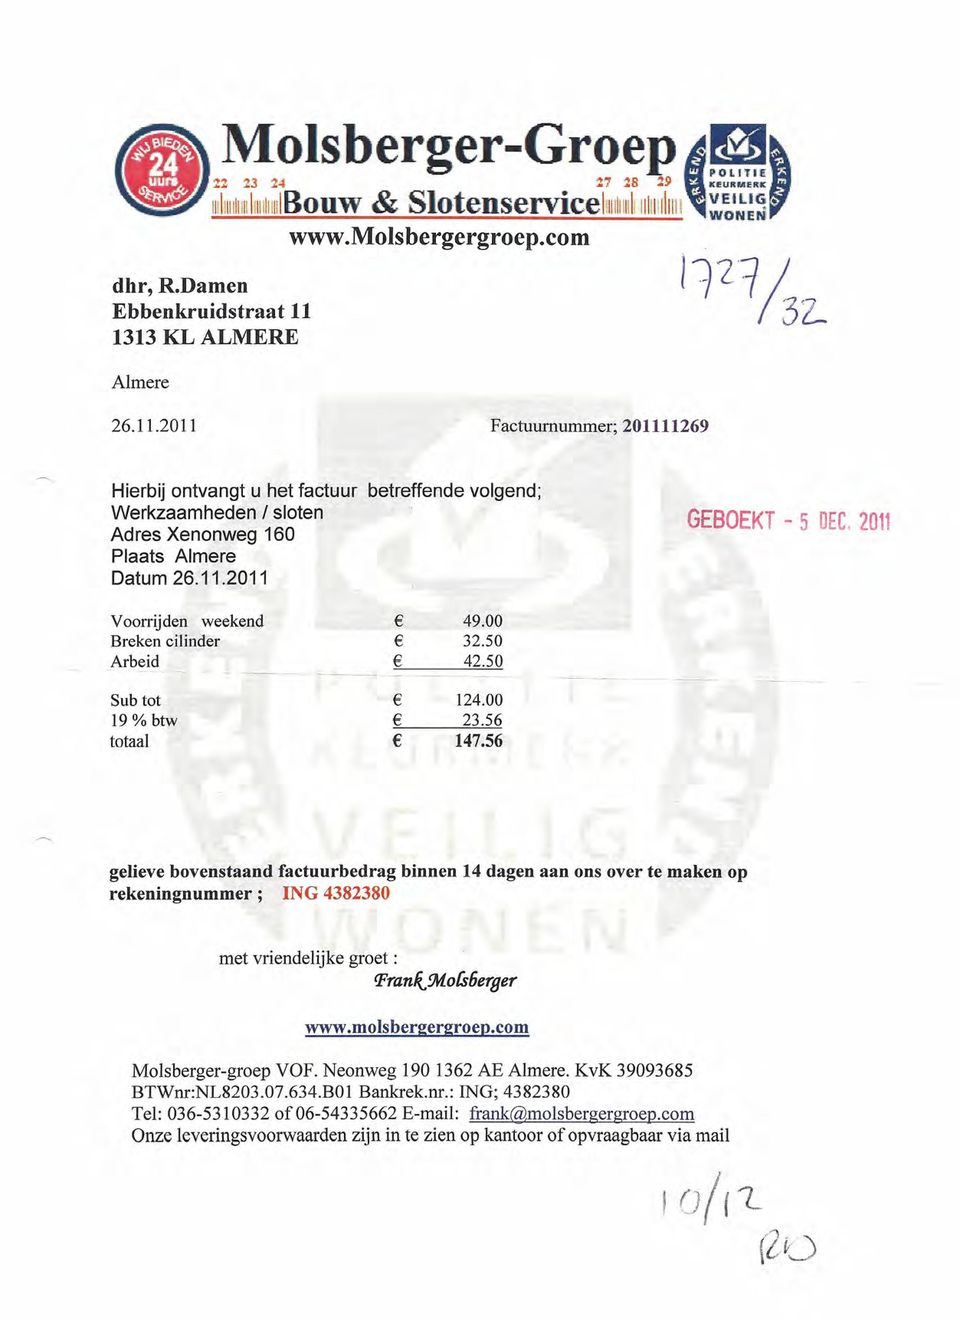 2011 Voorrijden weekend Breken cilinder Arbeid 49.00 32.50 42.50 Sub tot 19 % btw totaal 124.00 23.56 147.